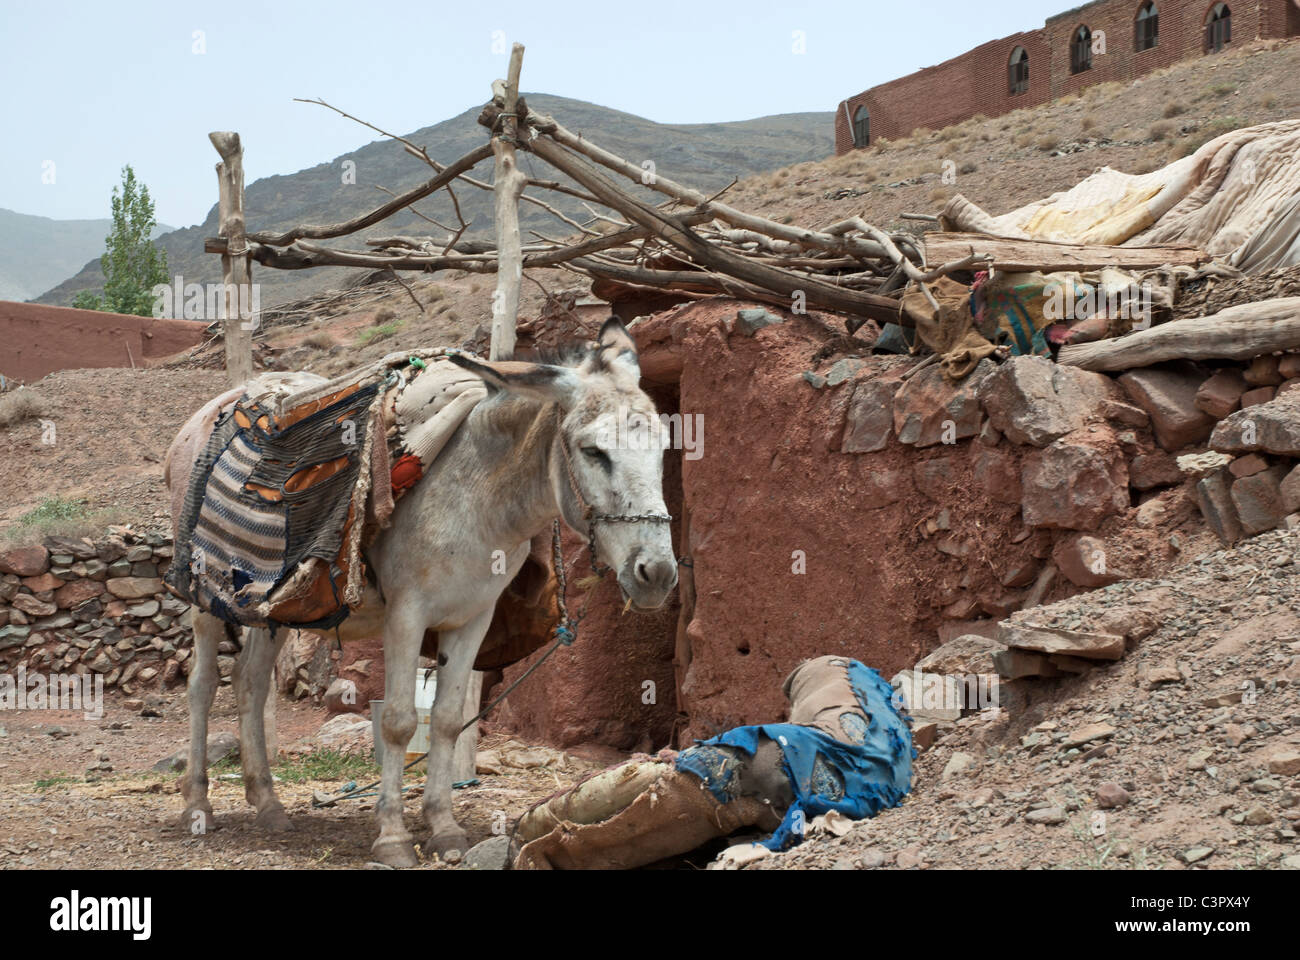 Asinello bianco da soli lonesome paesaggio orientale Iran Afghanistan deserto di sabbia rossa coperta di costruzione animali montagne caldo paese Foto Stock